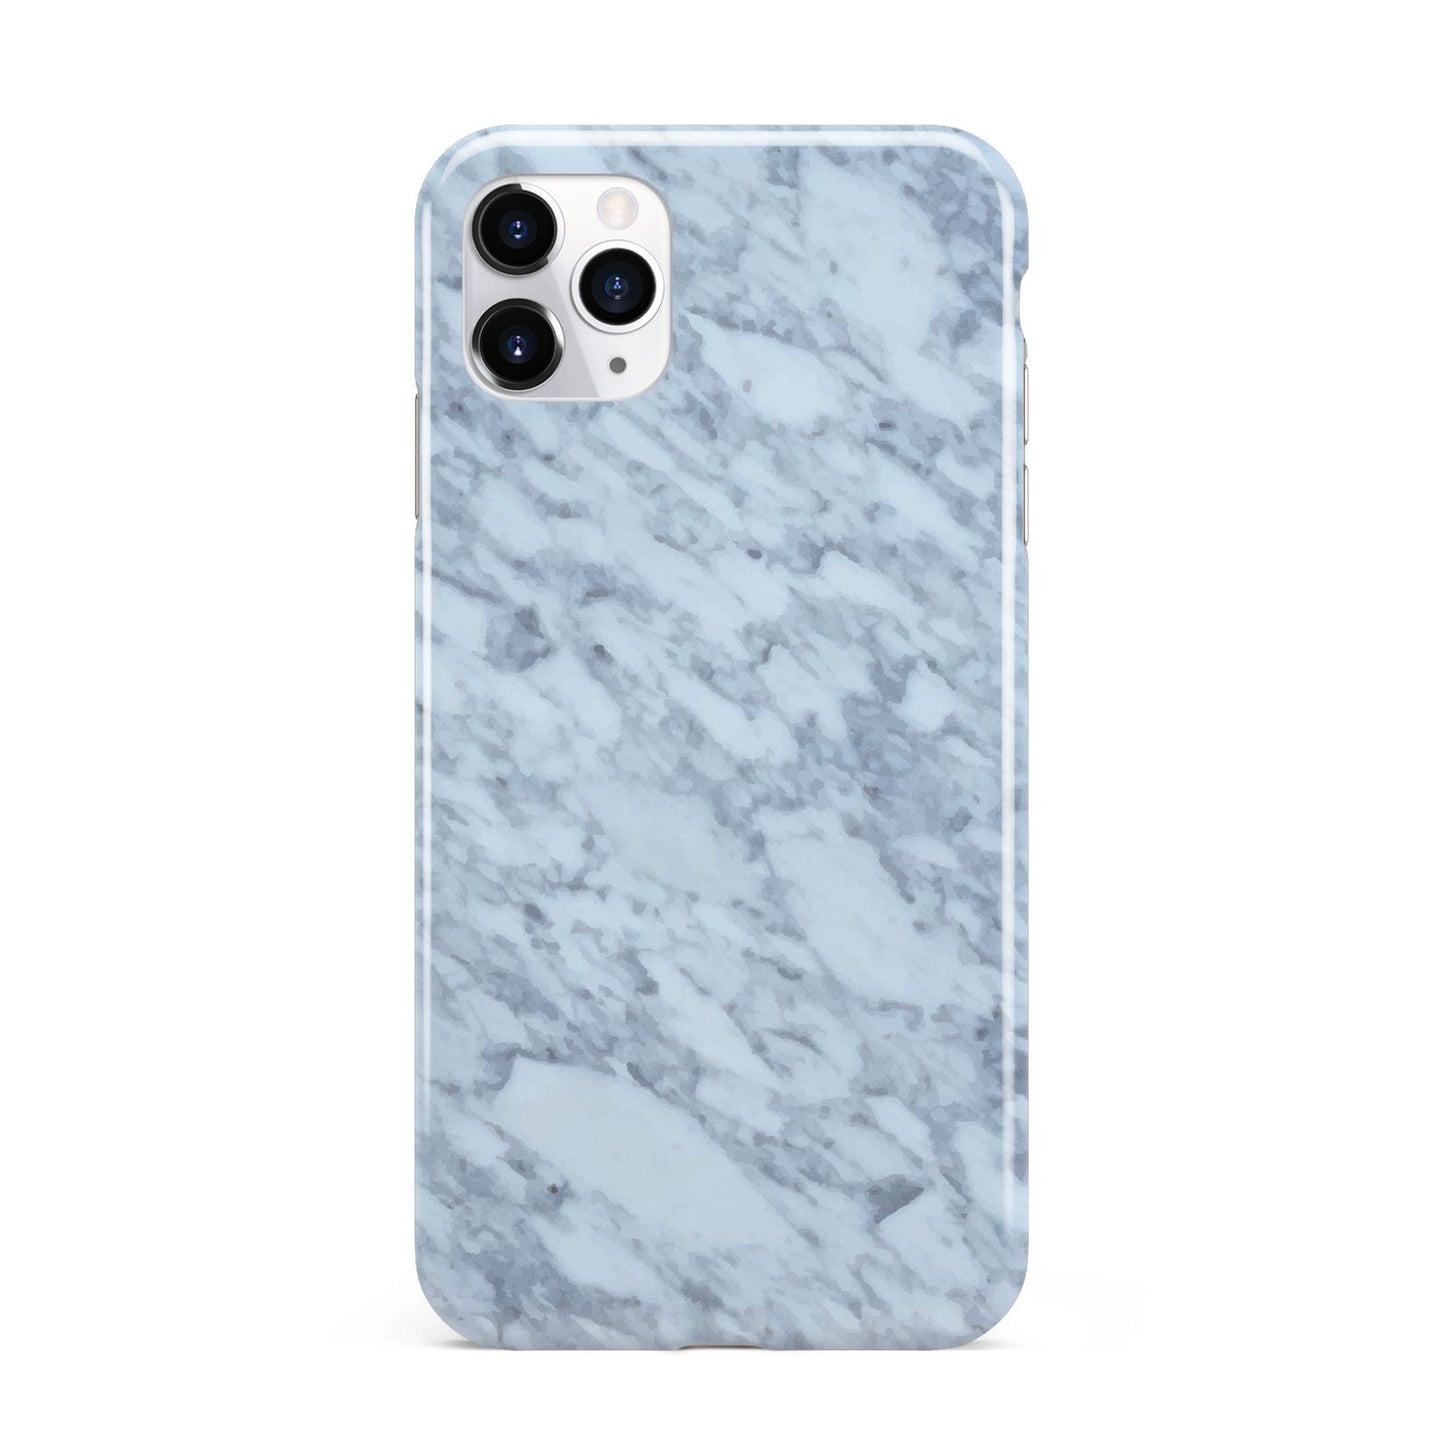 Faux Marble Grey 2 iPhone 11 Pro Max 3D Tough Case